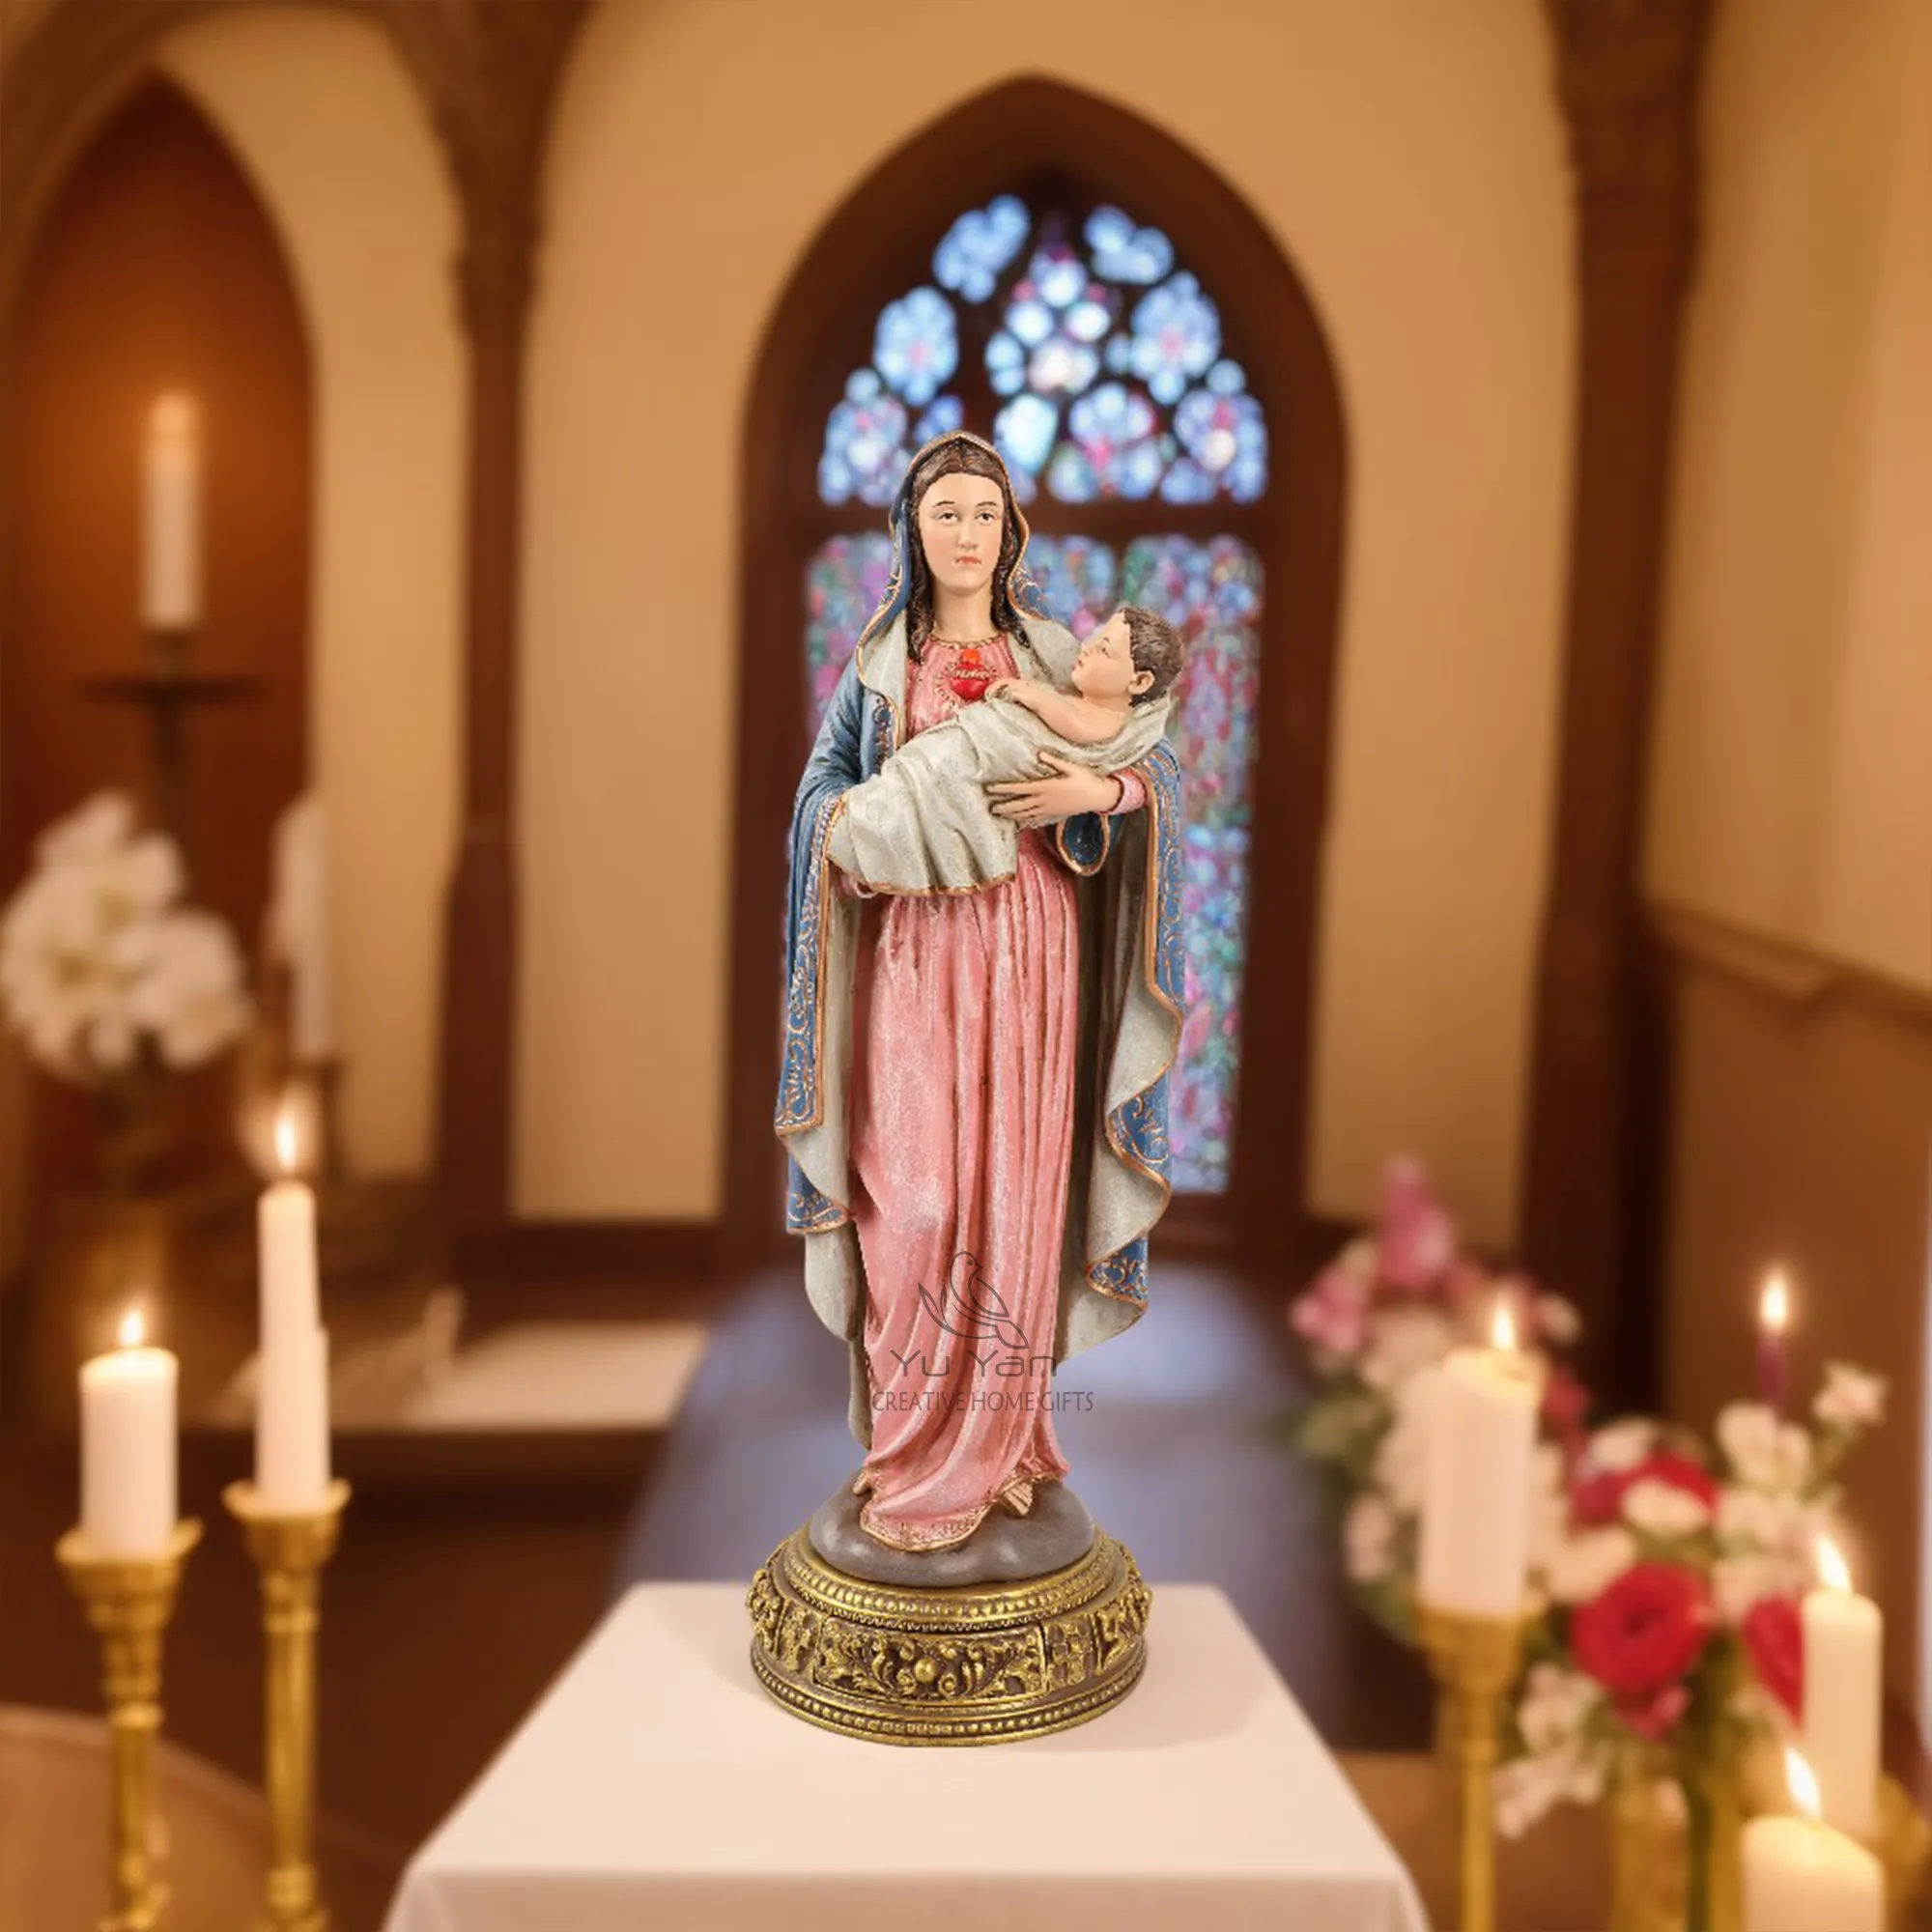 تماثيل دينية كاثوليكية للبيع بالجملة من المصنع، تماثيل مريم العذراء المُظهرة من الراتنج، تماثيل دينية براقة من الترتر لتزيين المنزل